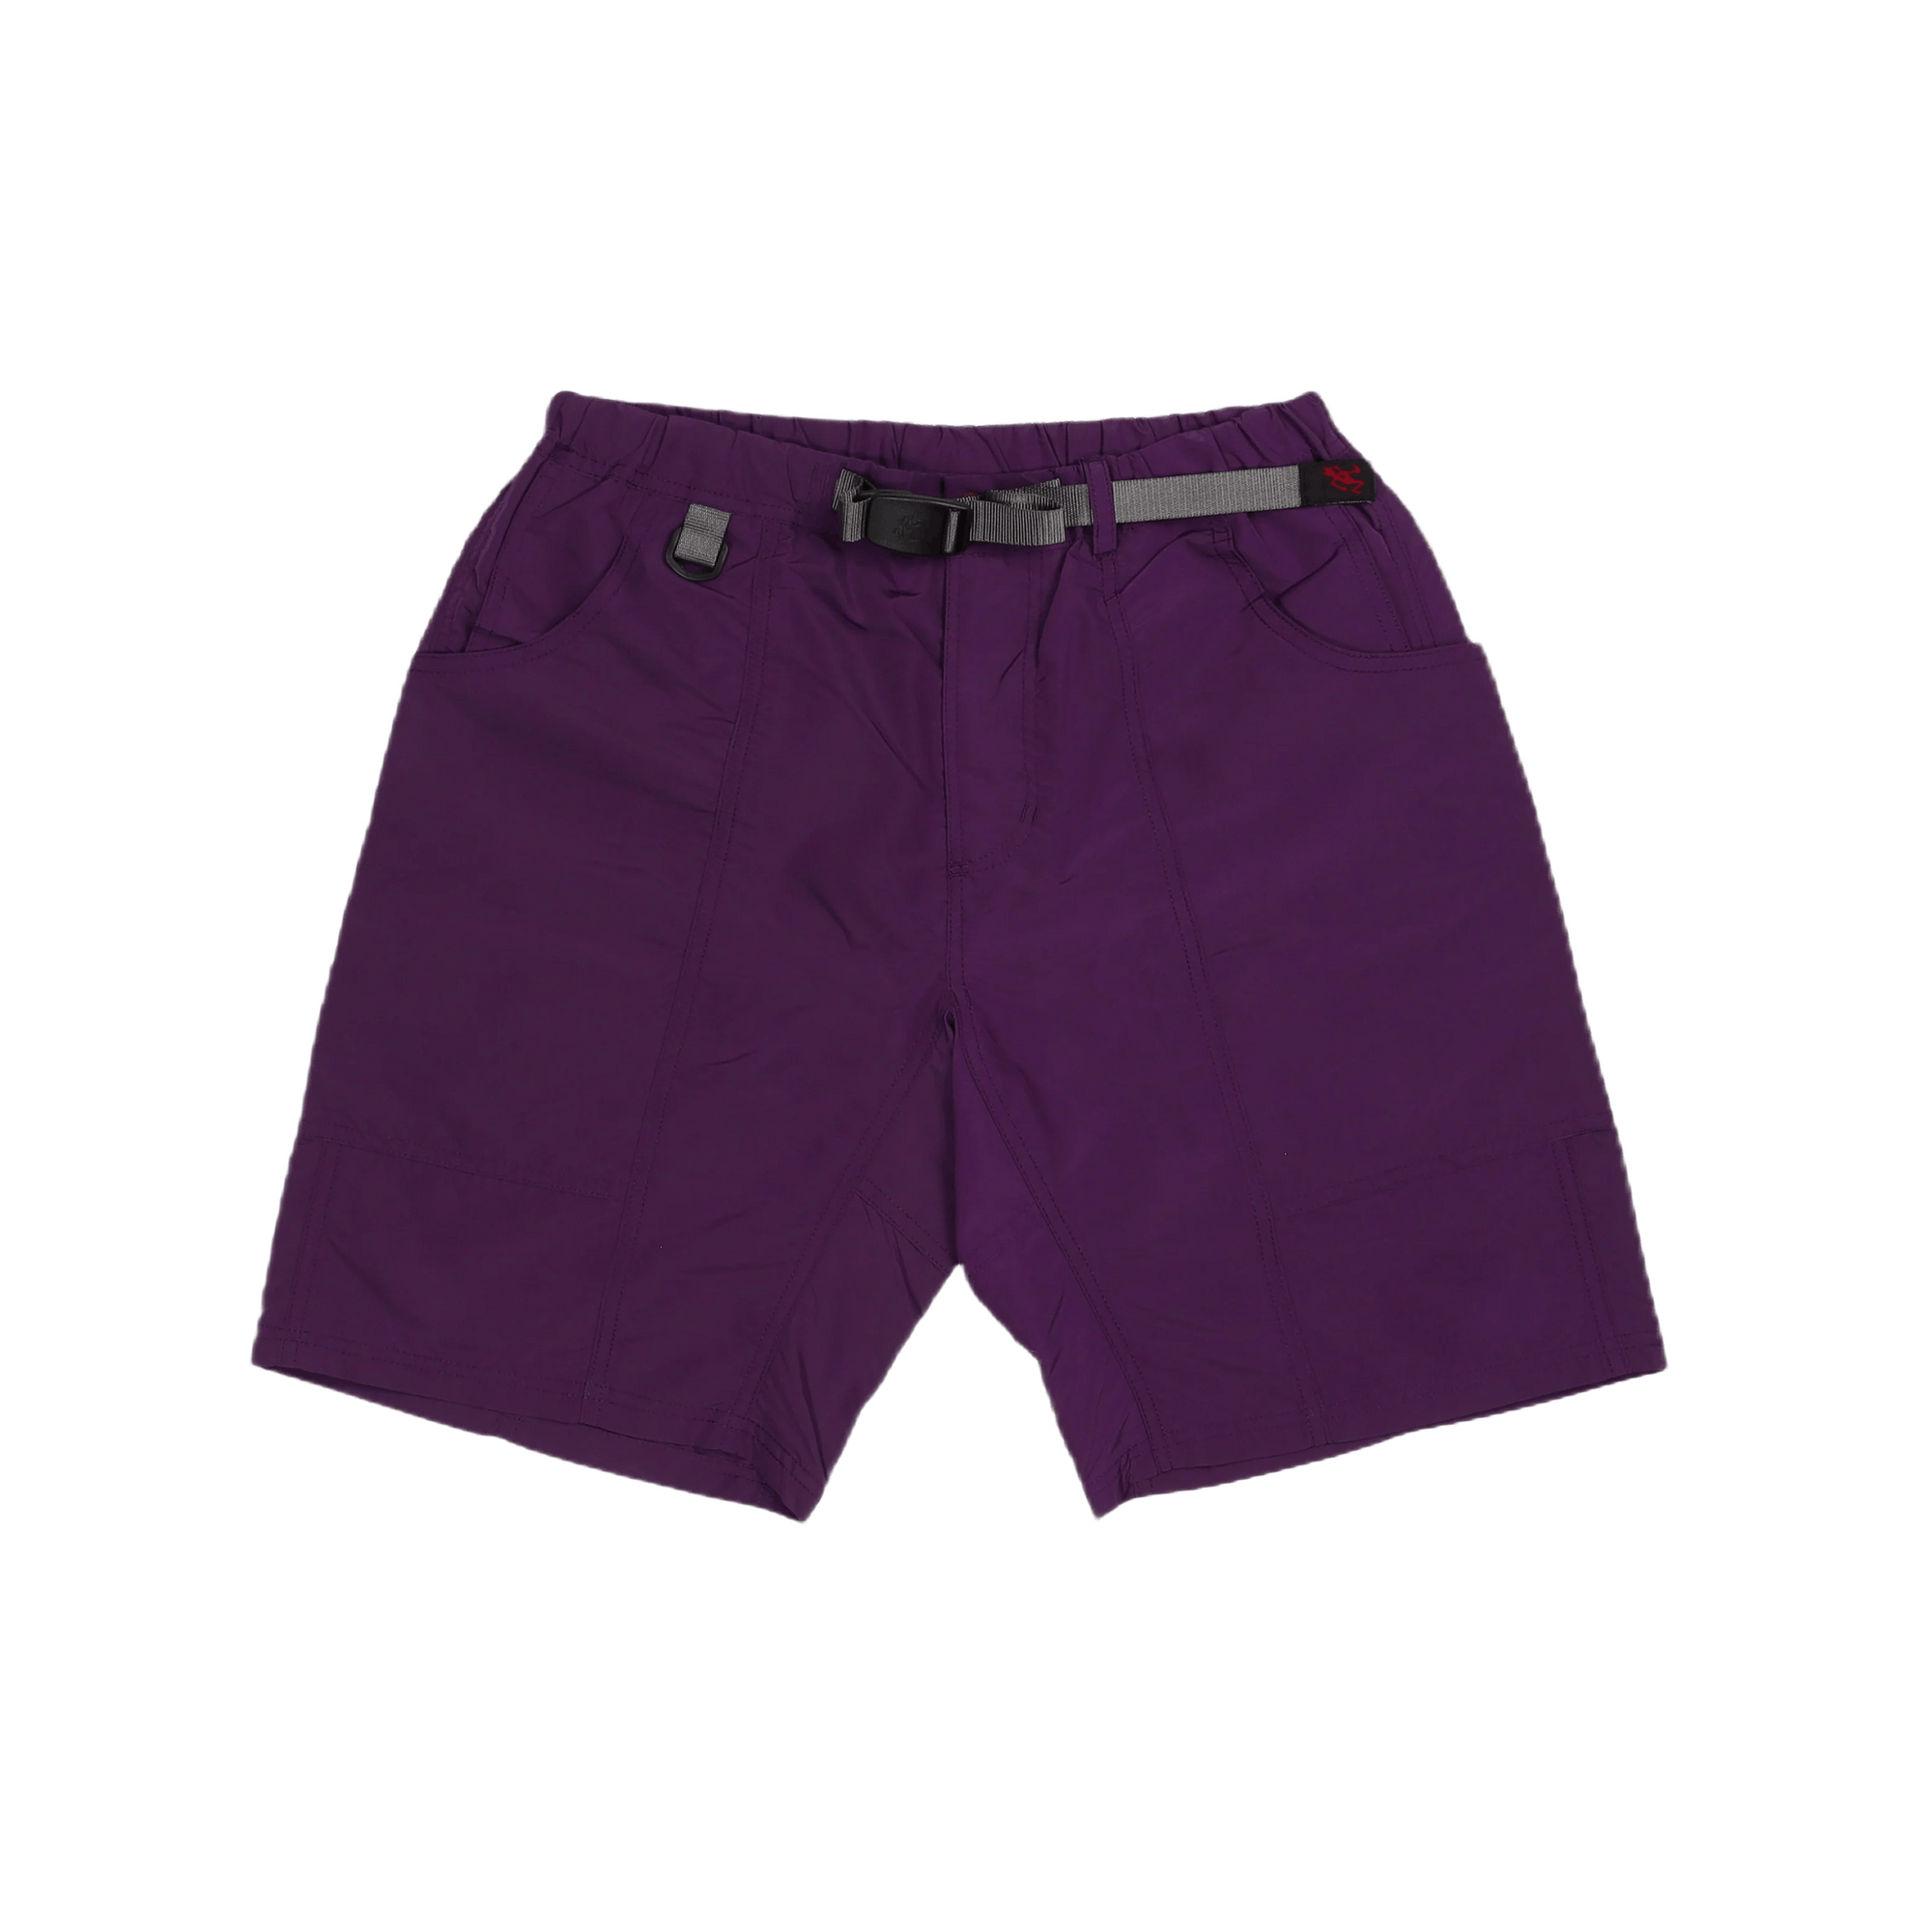 Shell Gear Short Purple